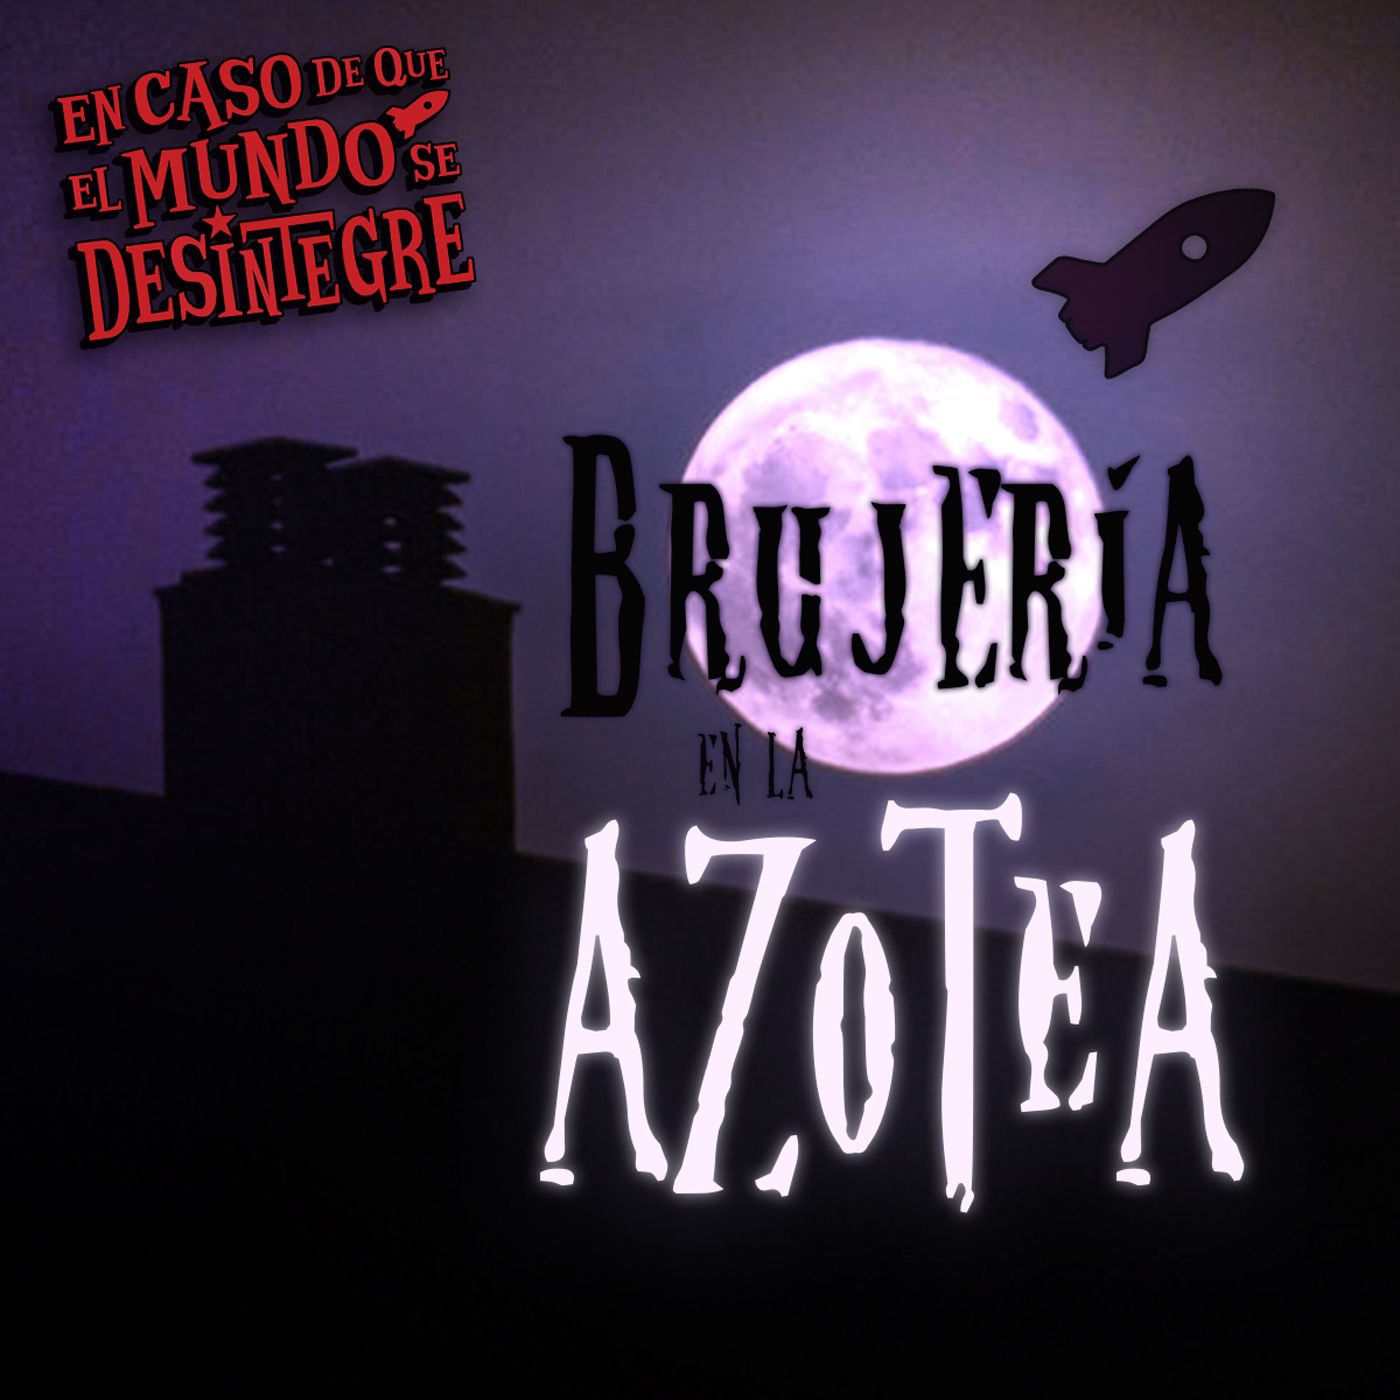 S26 Ep5779: Brujería En La Azotea